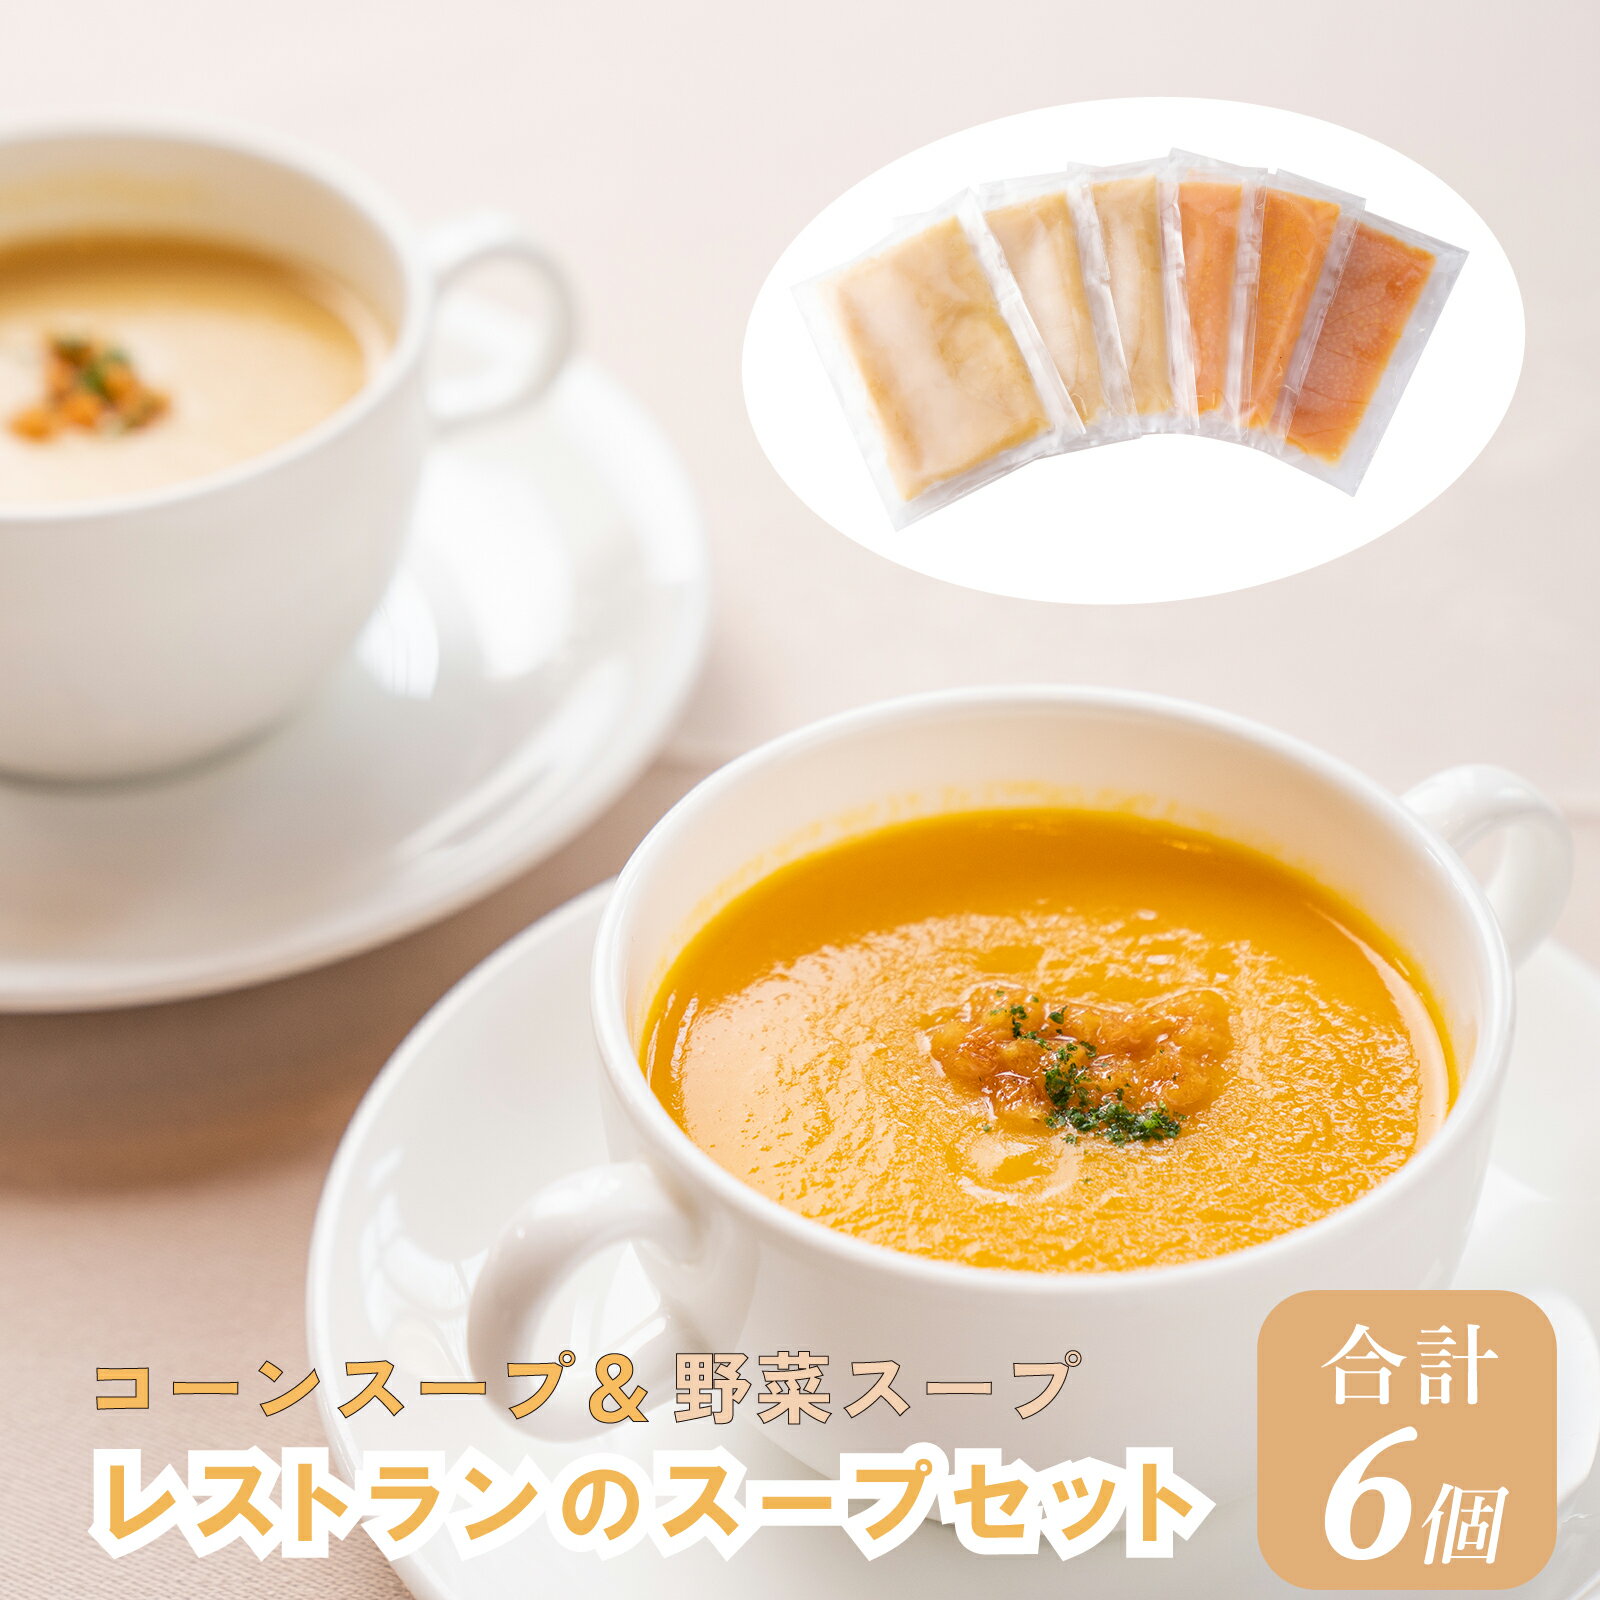 J5 レストランのスープセット [スープ コーンスープ 野菜スープ ポタージュ セット レストラン 冷凍食品]